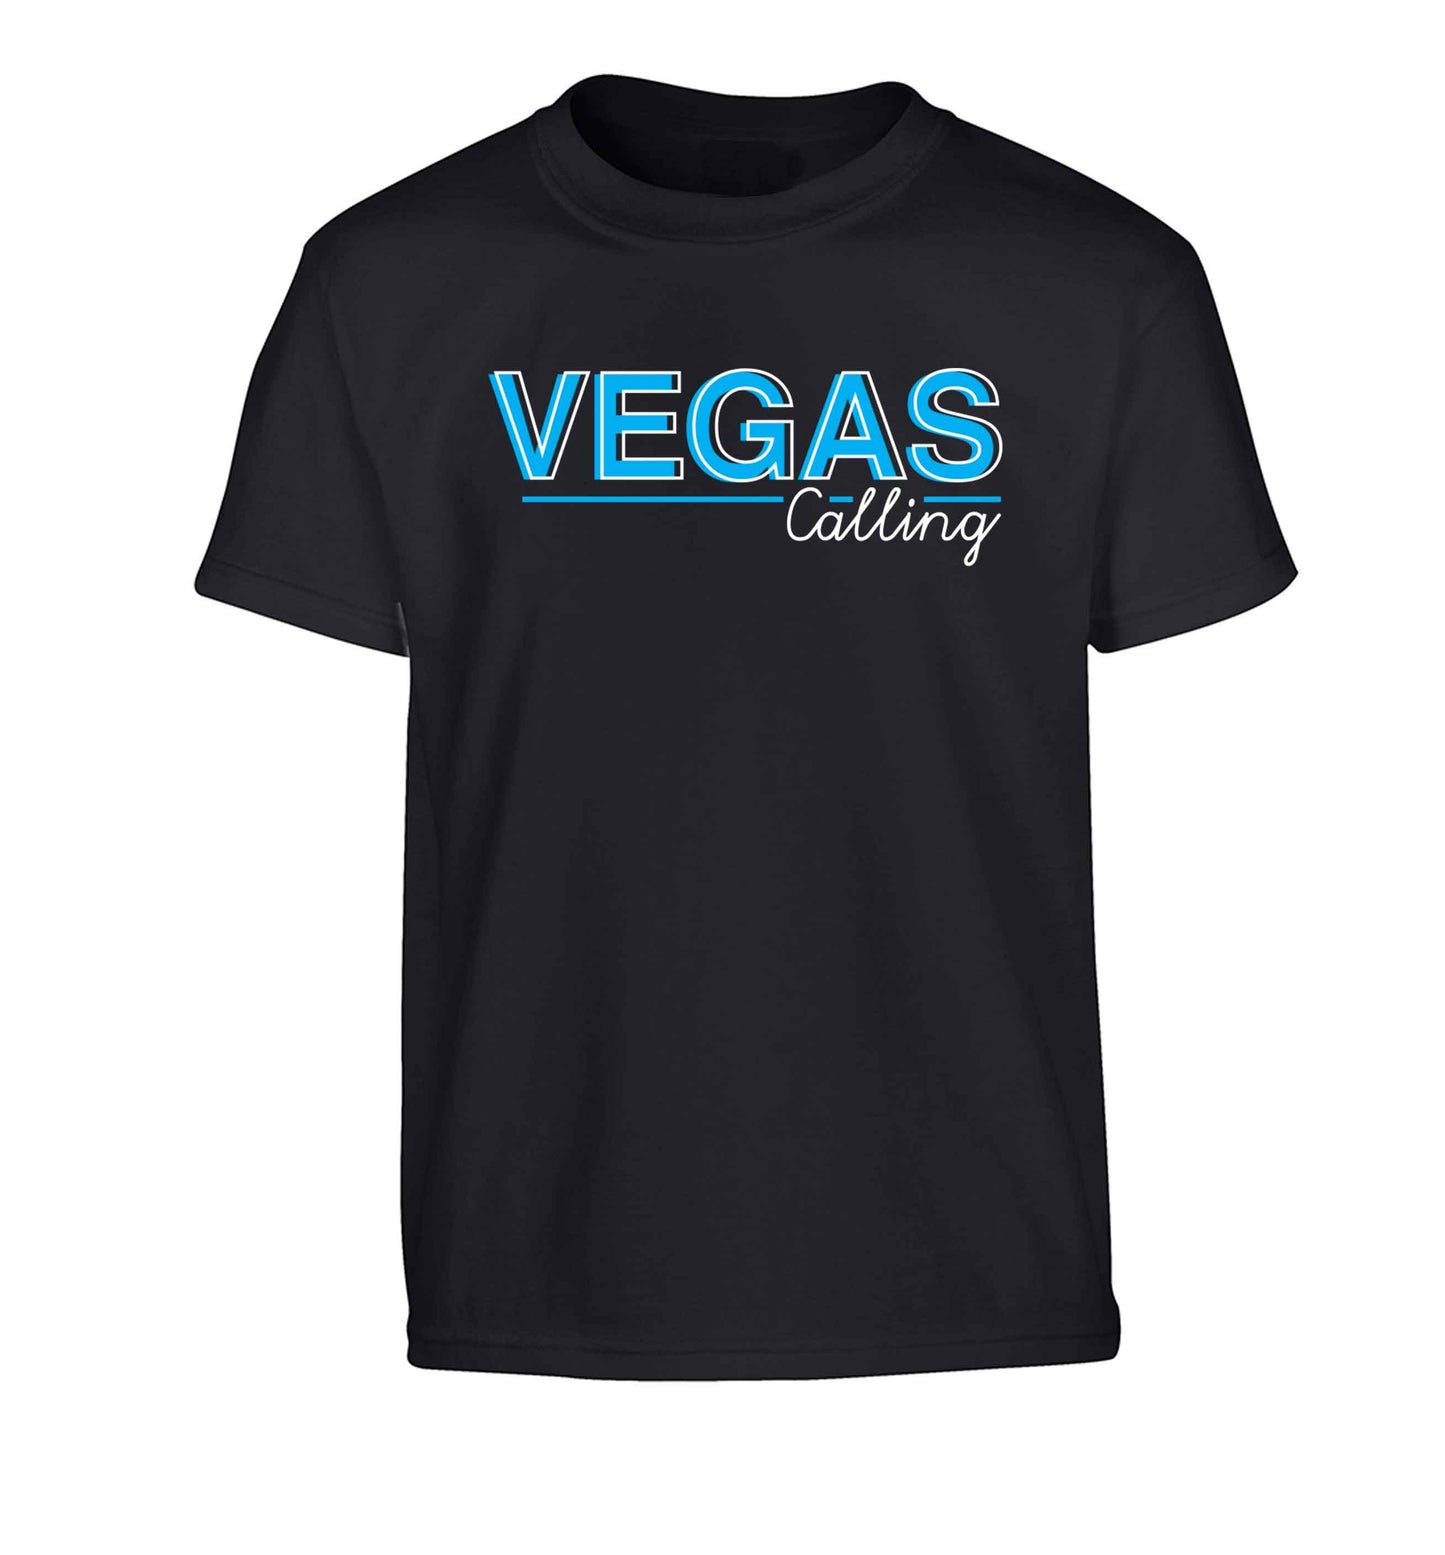 Vegas calling Children's black Tshirt 12-13 Years